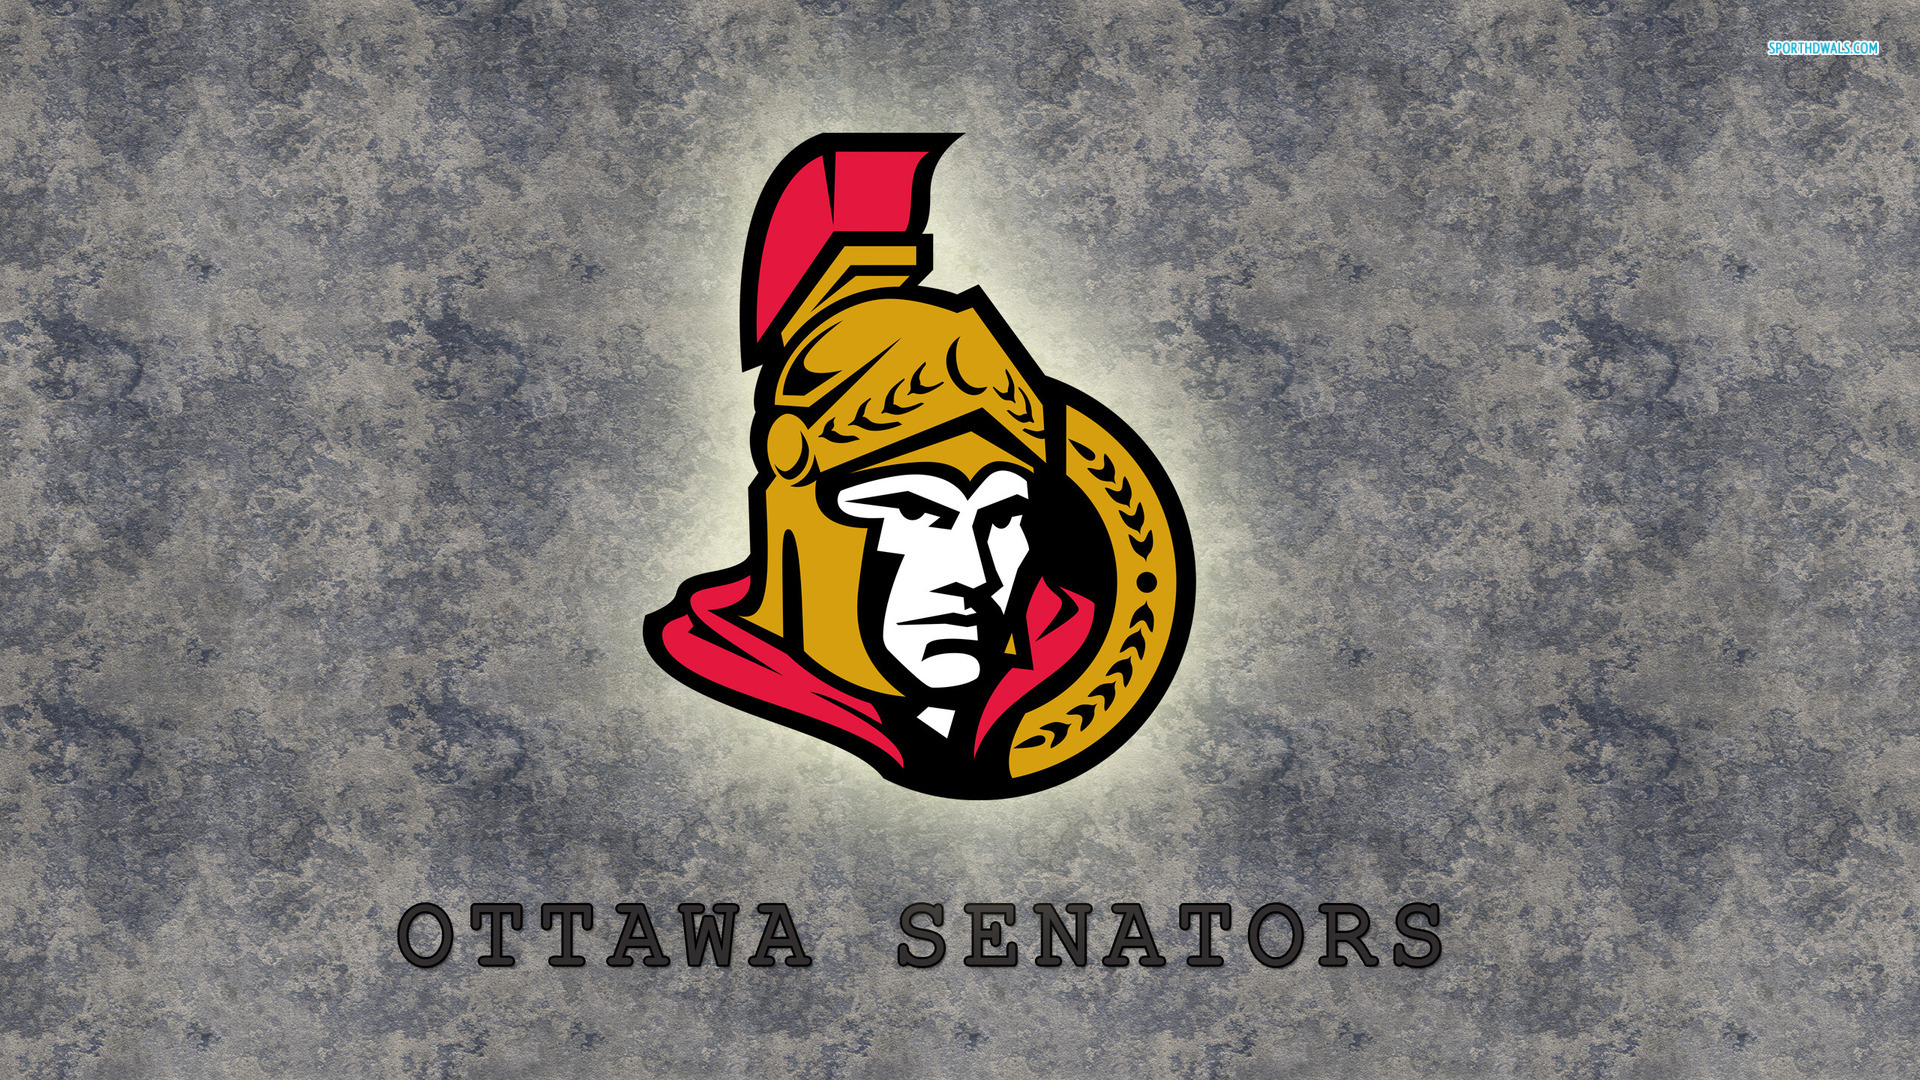 Outstanding Ottawa Senators Wallpaper